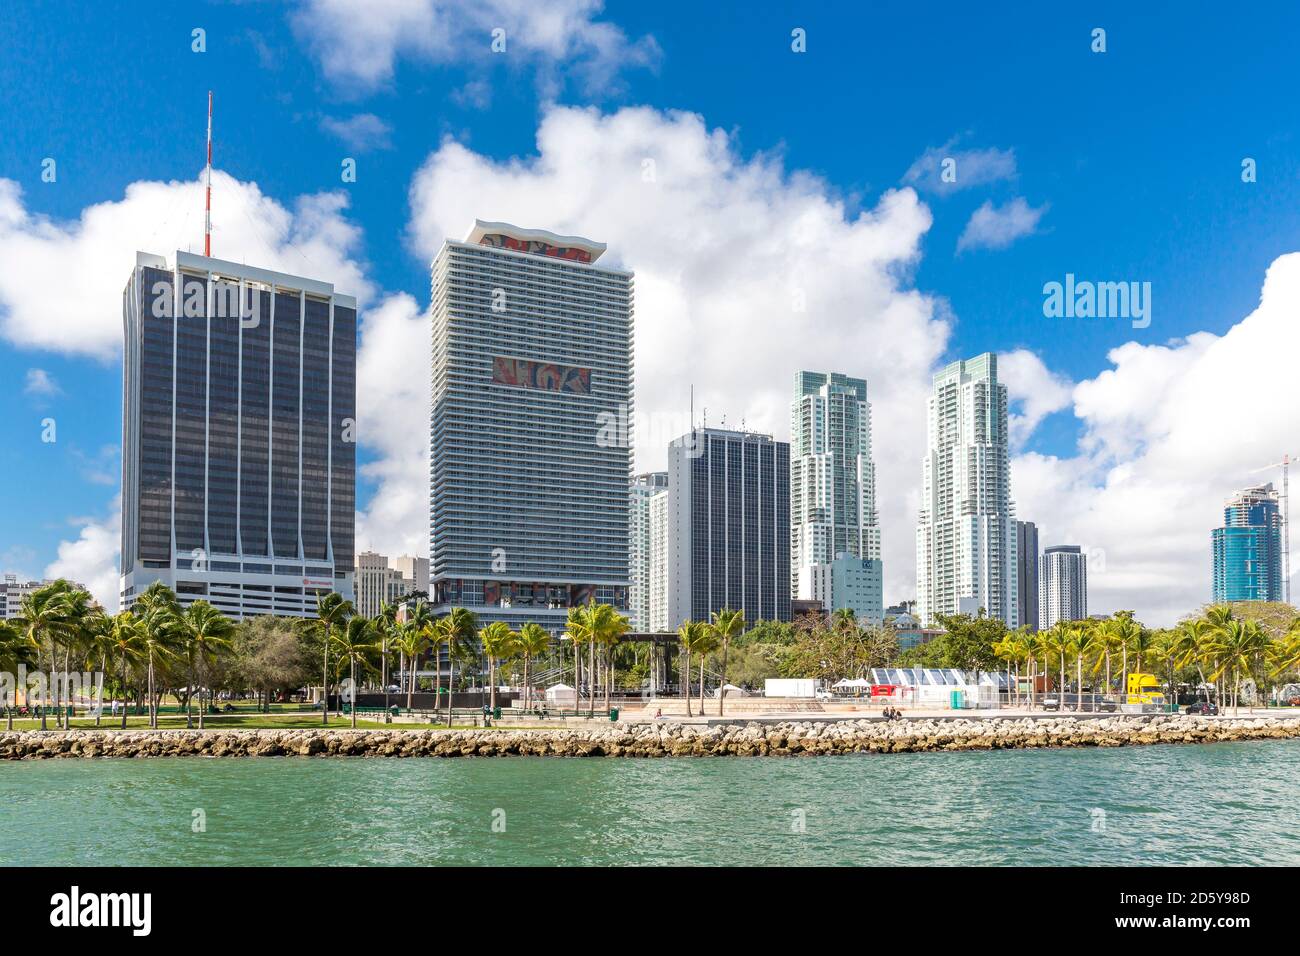 États-Unis, Floride, Miami, Bayfront Park avec horizon Banque D'Images